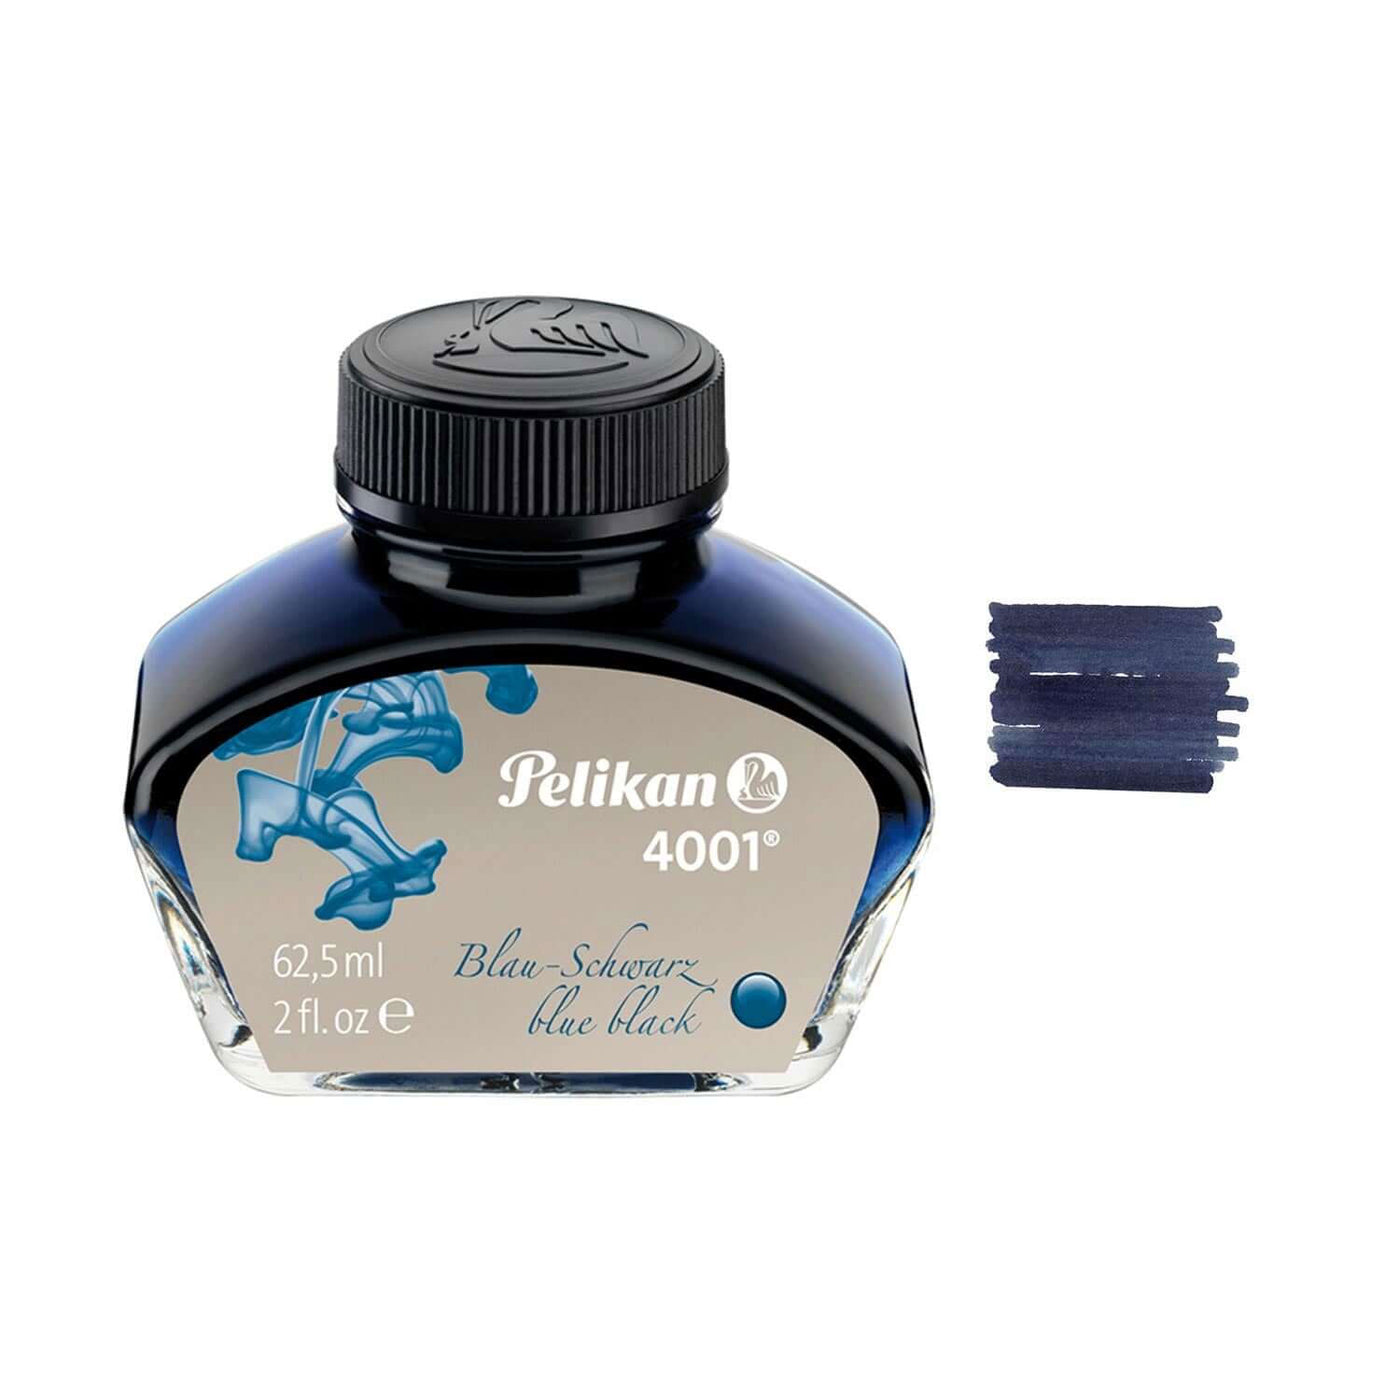 Pelikan 4001 Ink, Blue Black - 62.5ml